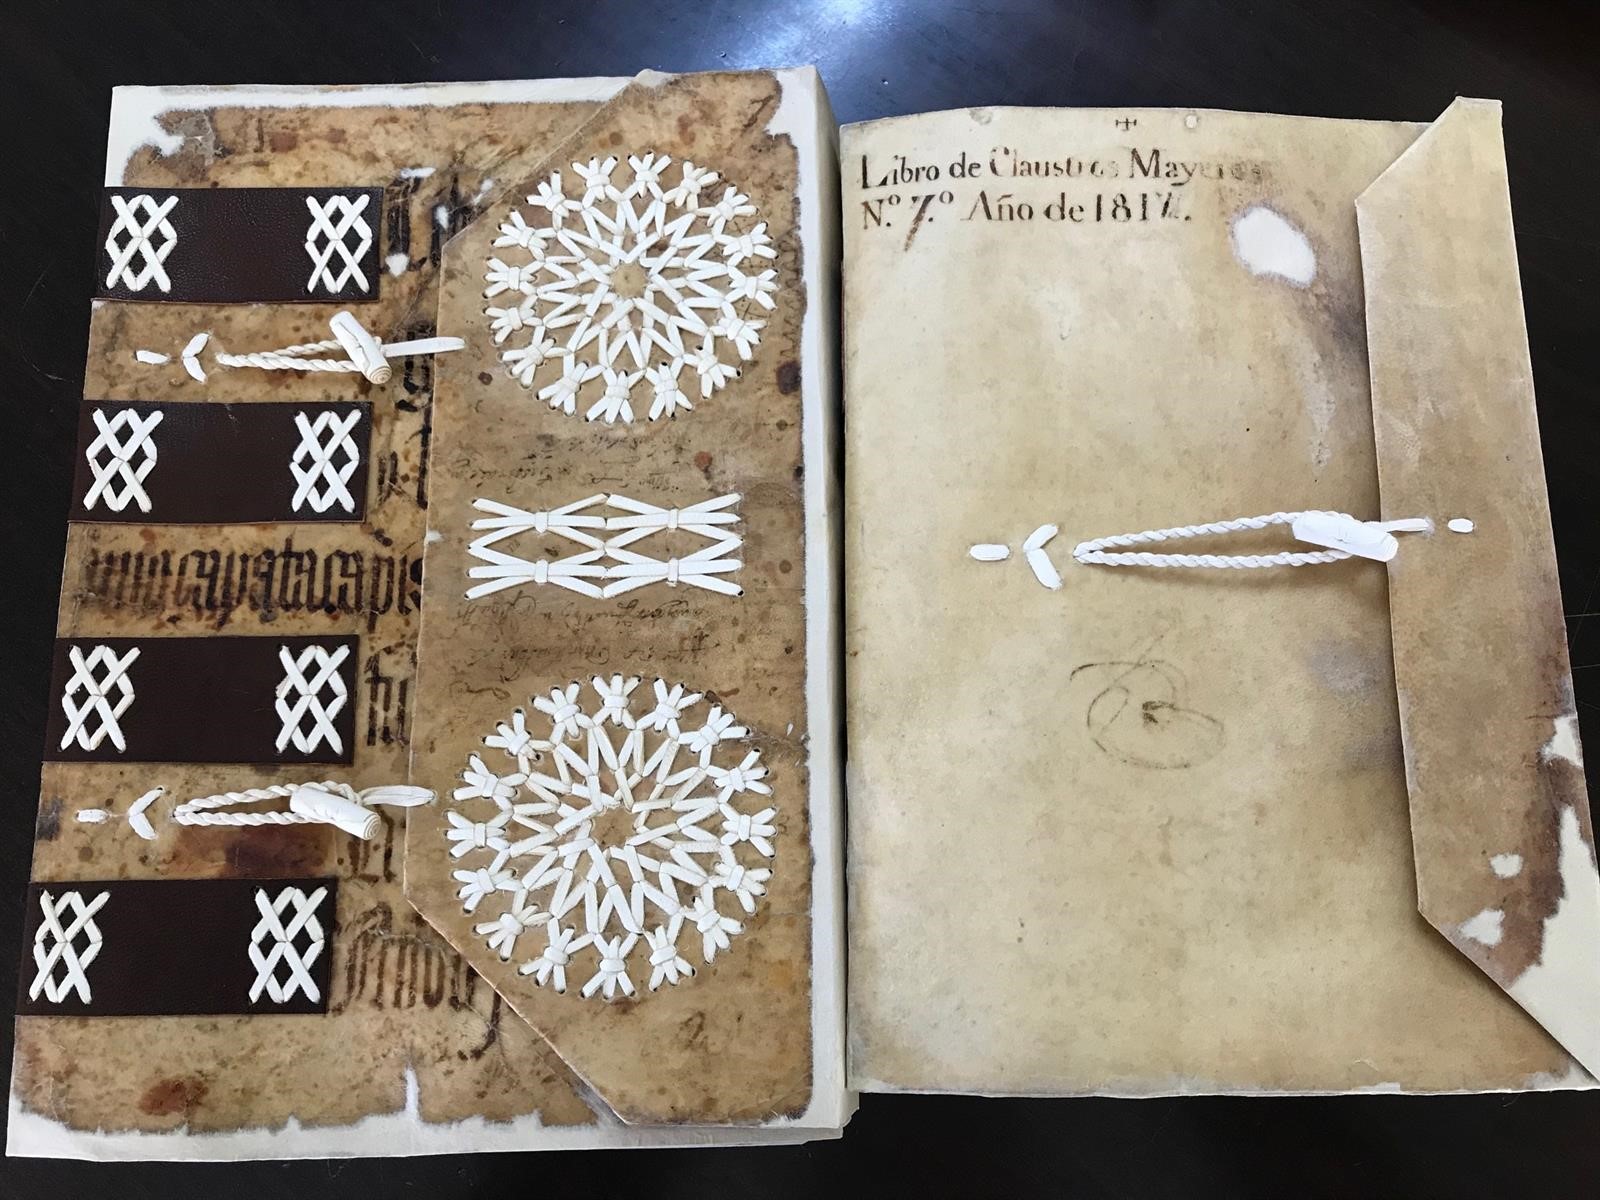 Los dos libros restaurados que estarán en el Archivo Provincial de Toledo